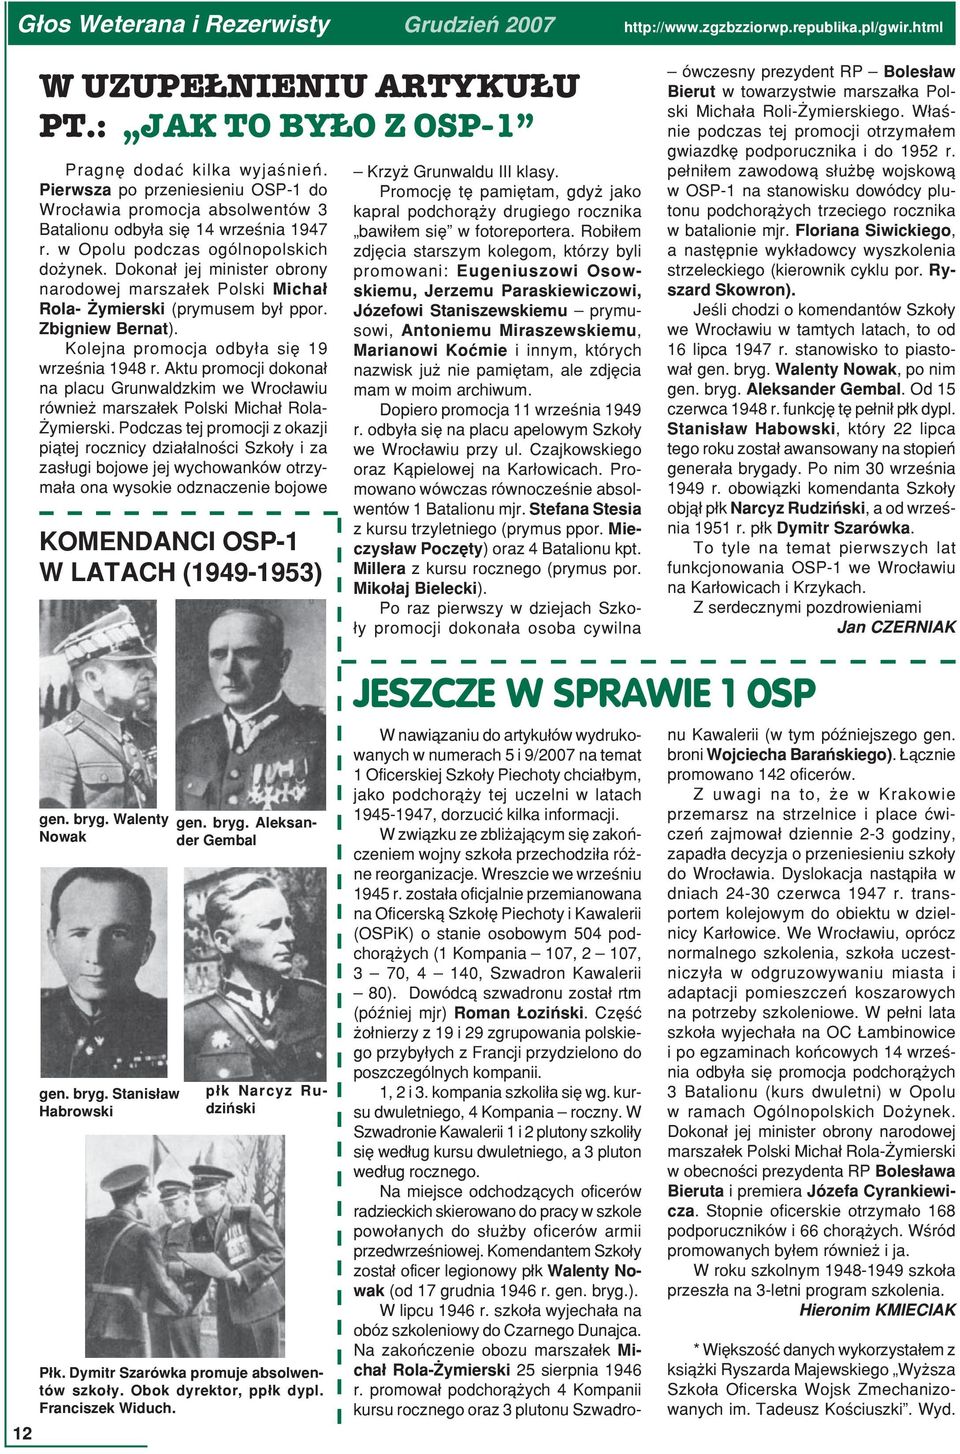 Dokonał jej minister obrony narodowej marszałek Polski Michał Rola- Żymierski (prymusem był ppor. Zbigniew Bernat). Kolejna promocja odbyła się 19 września 1948 r.